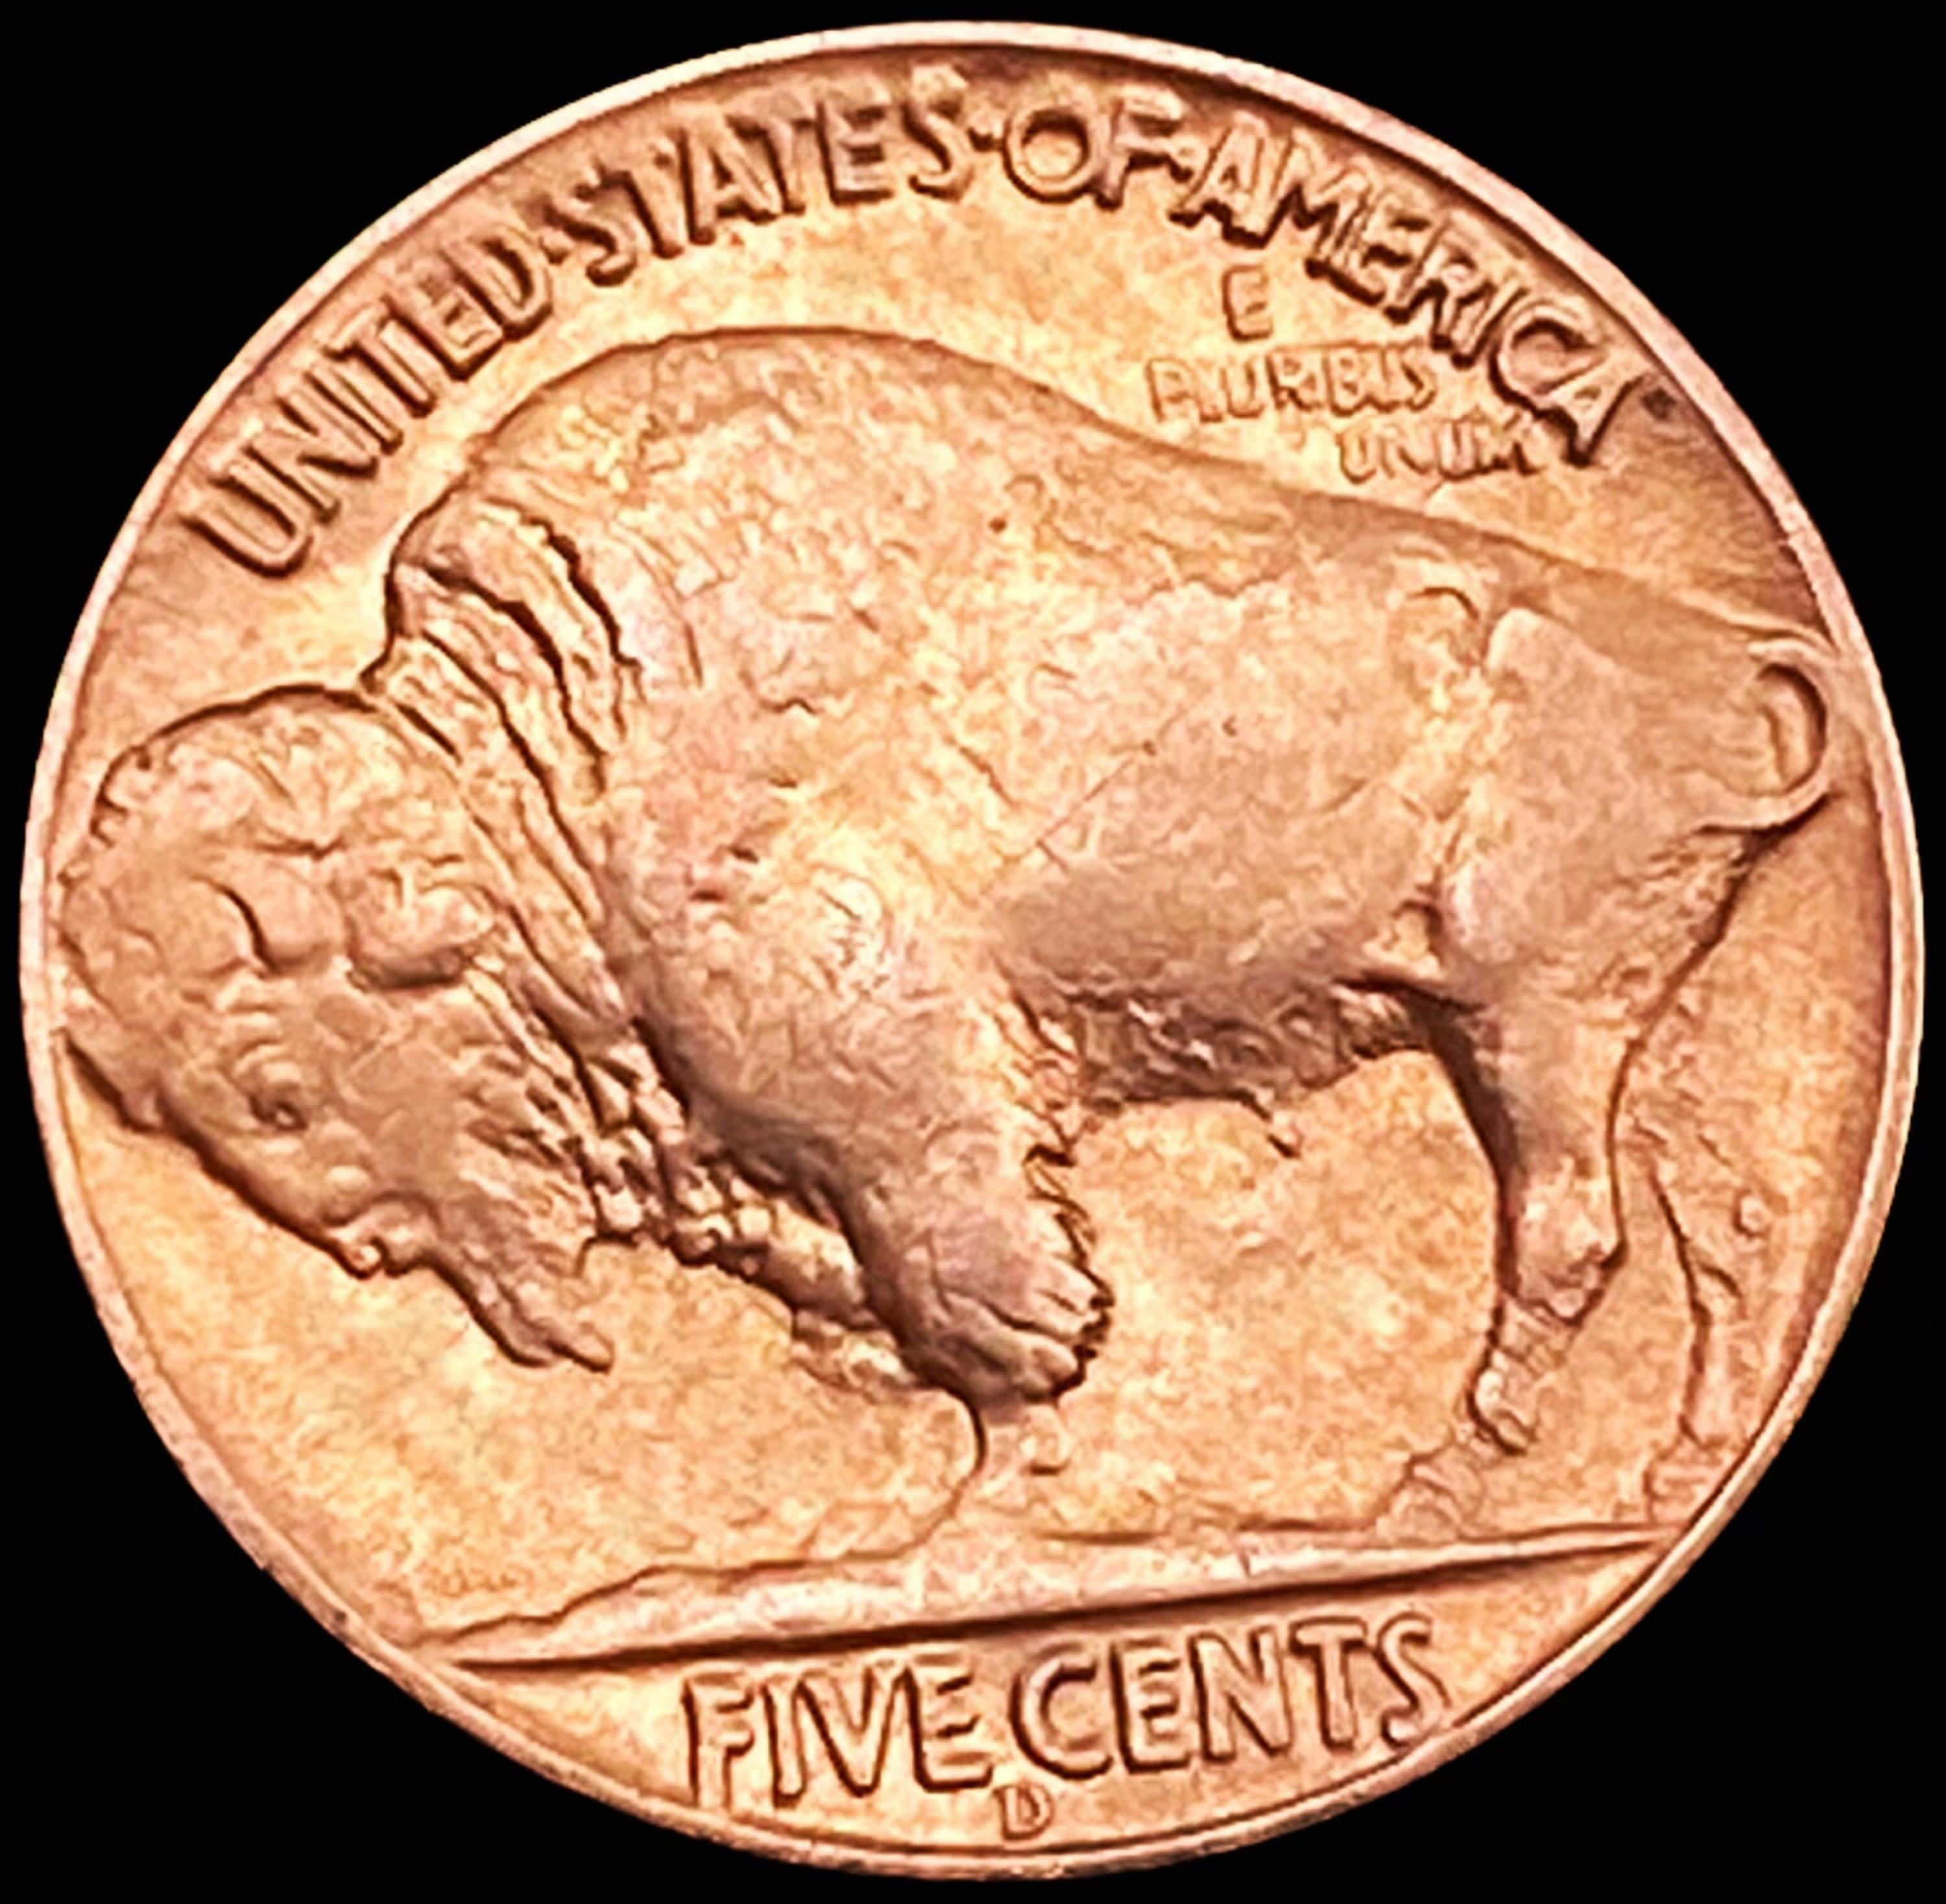 1937-D 3 Leg Buffalo Nickel UNCIRCULATED